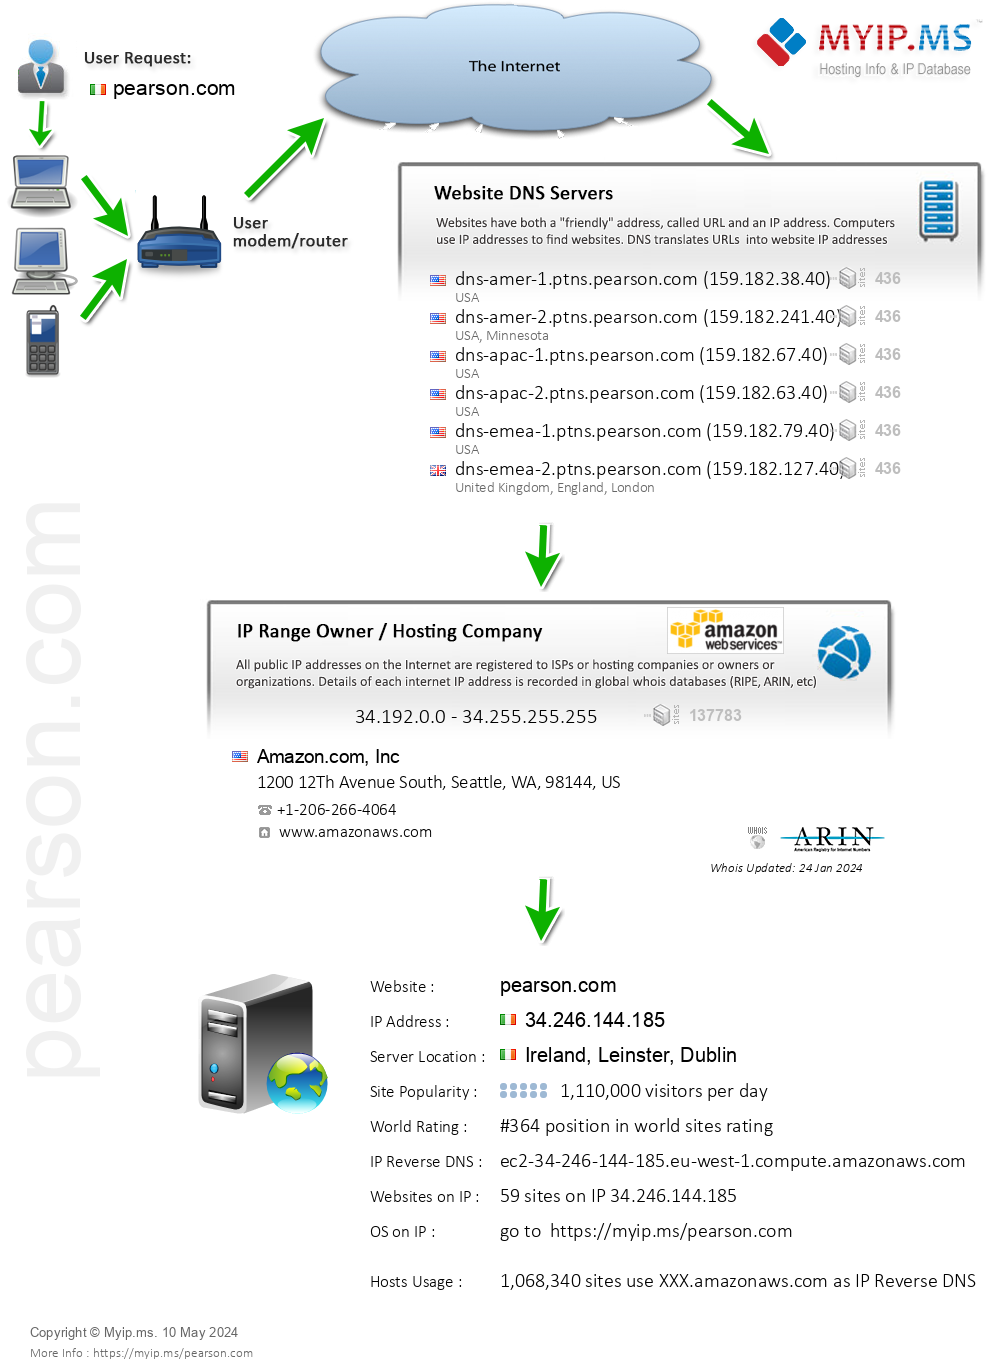 Pearson.com - Website Hosting Visual IP Diagram